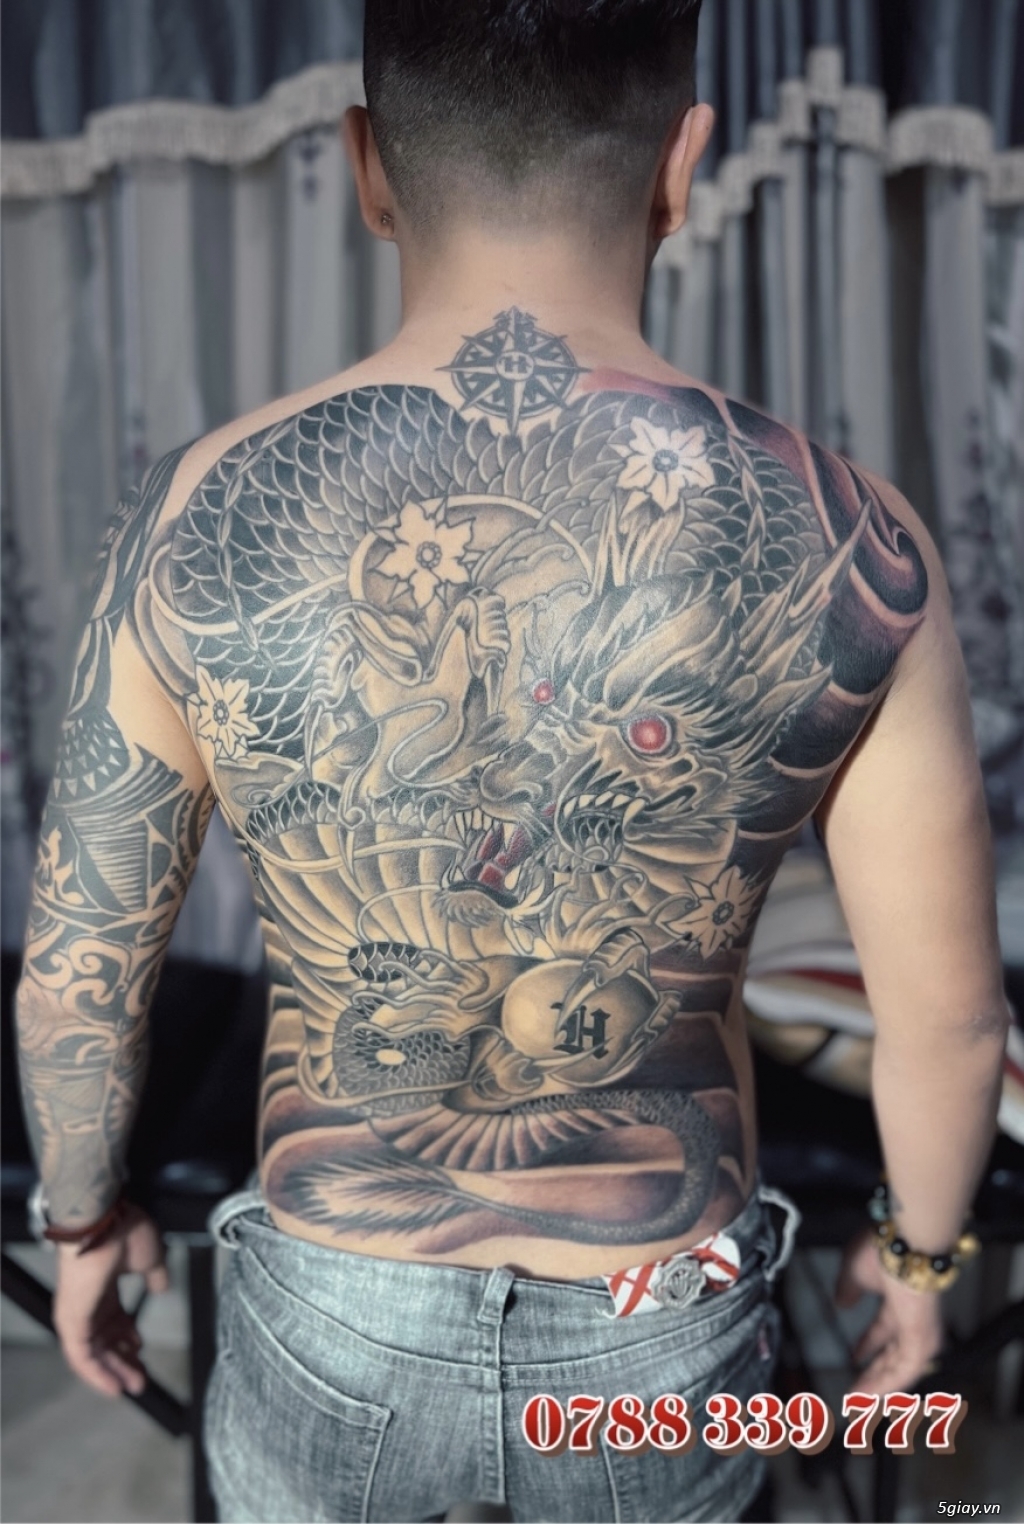 Tattoo Phi Dũng  Xăm Hình Nghệ Thuật ở TP HCM  Foodyvn